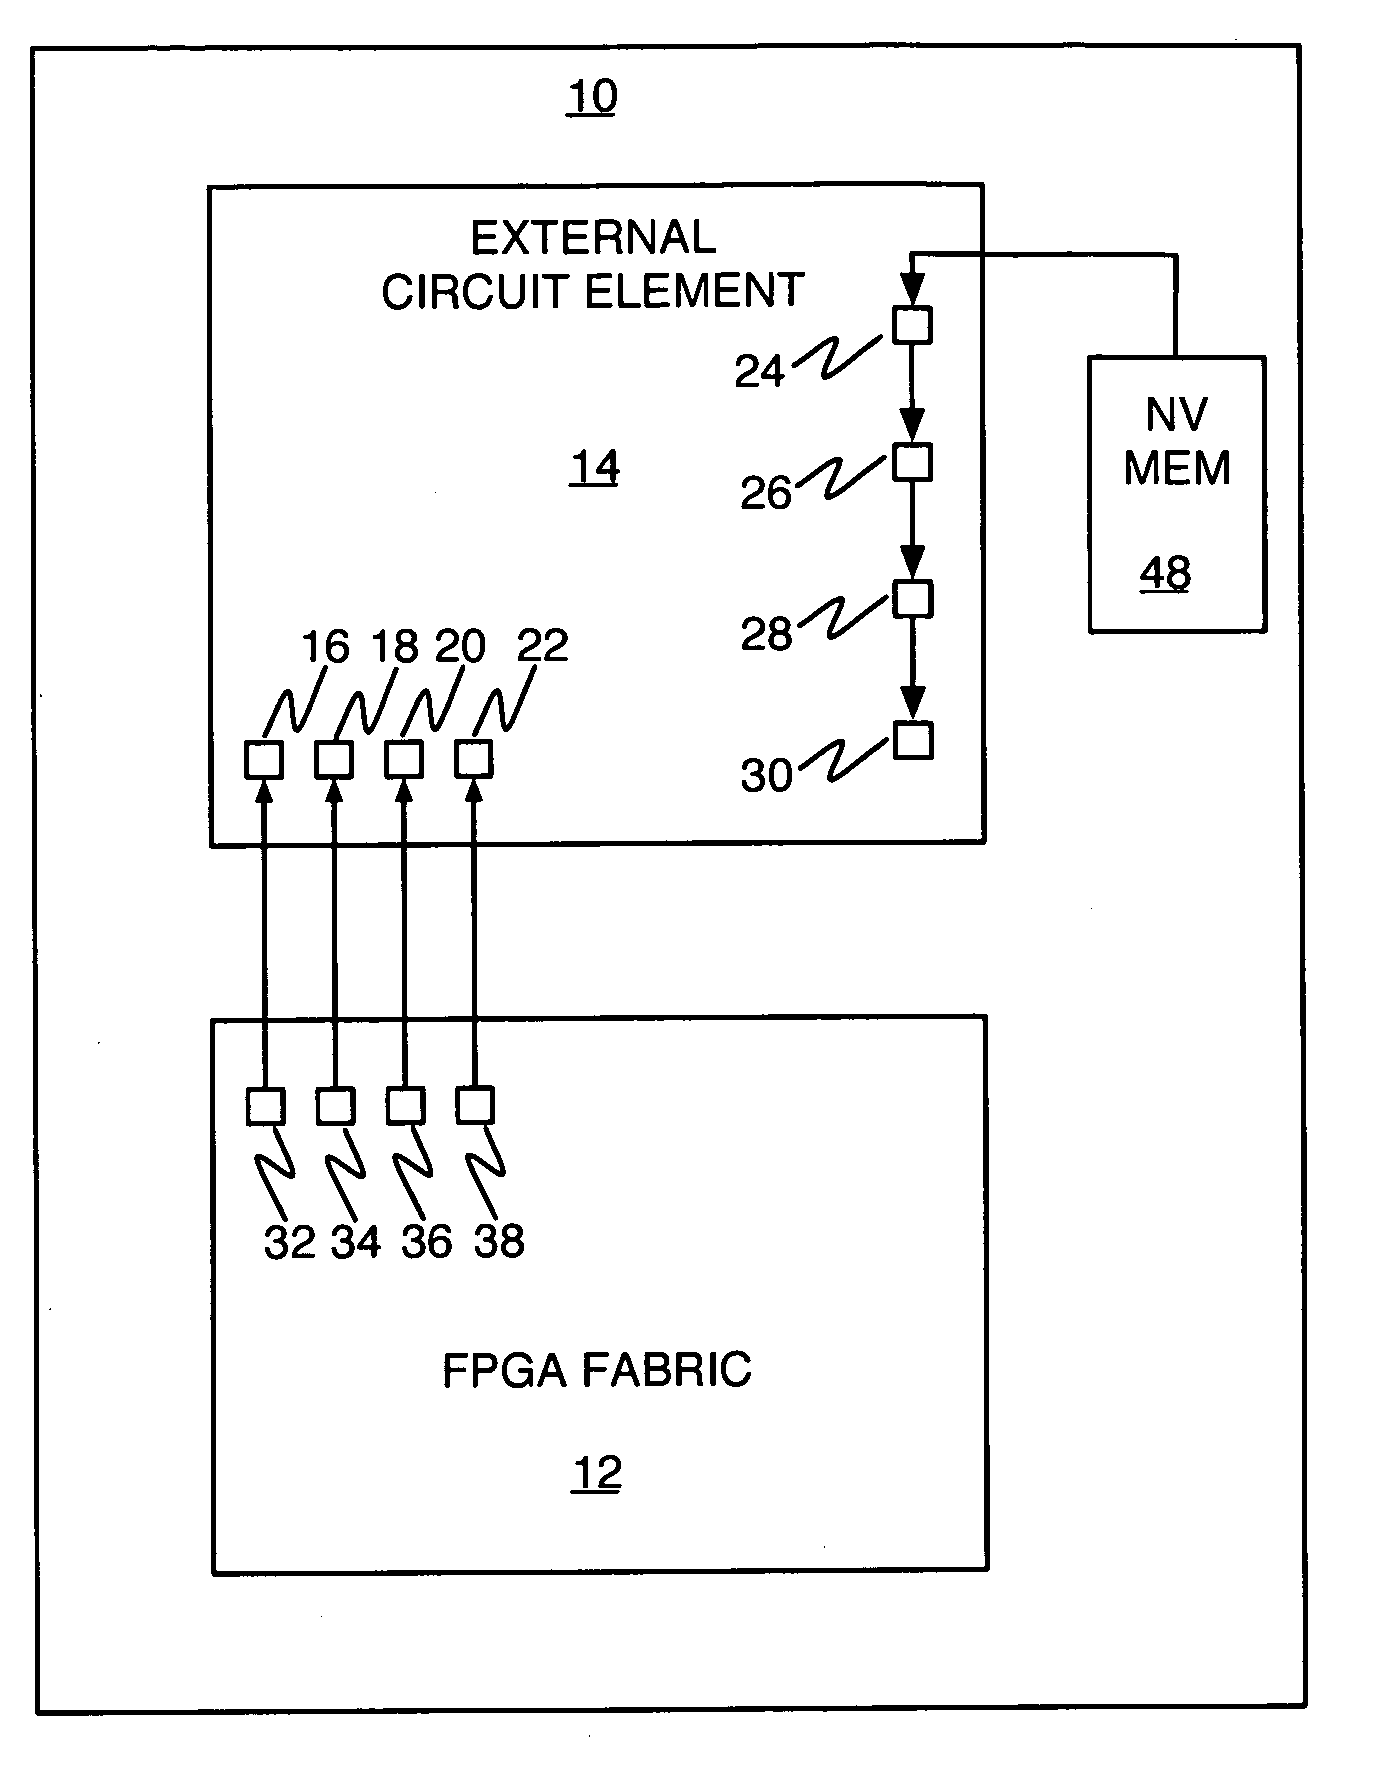 Non-volatile memory configuration scheme for volatile-memory-based programmable circuits in an FPGA